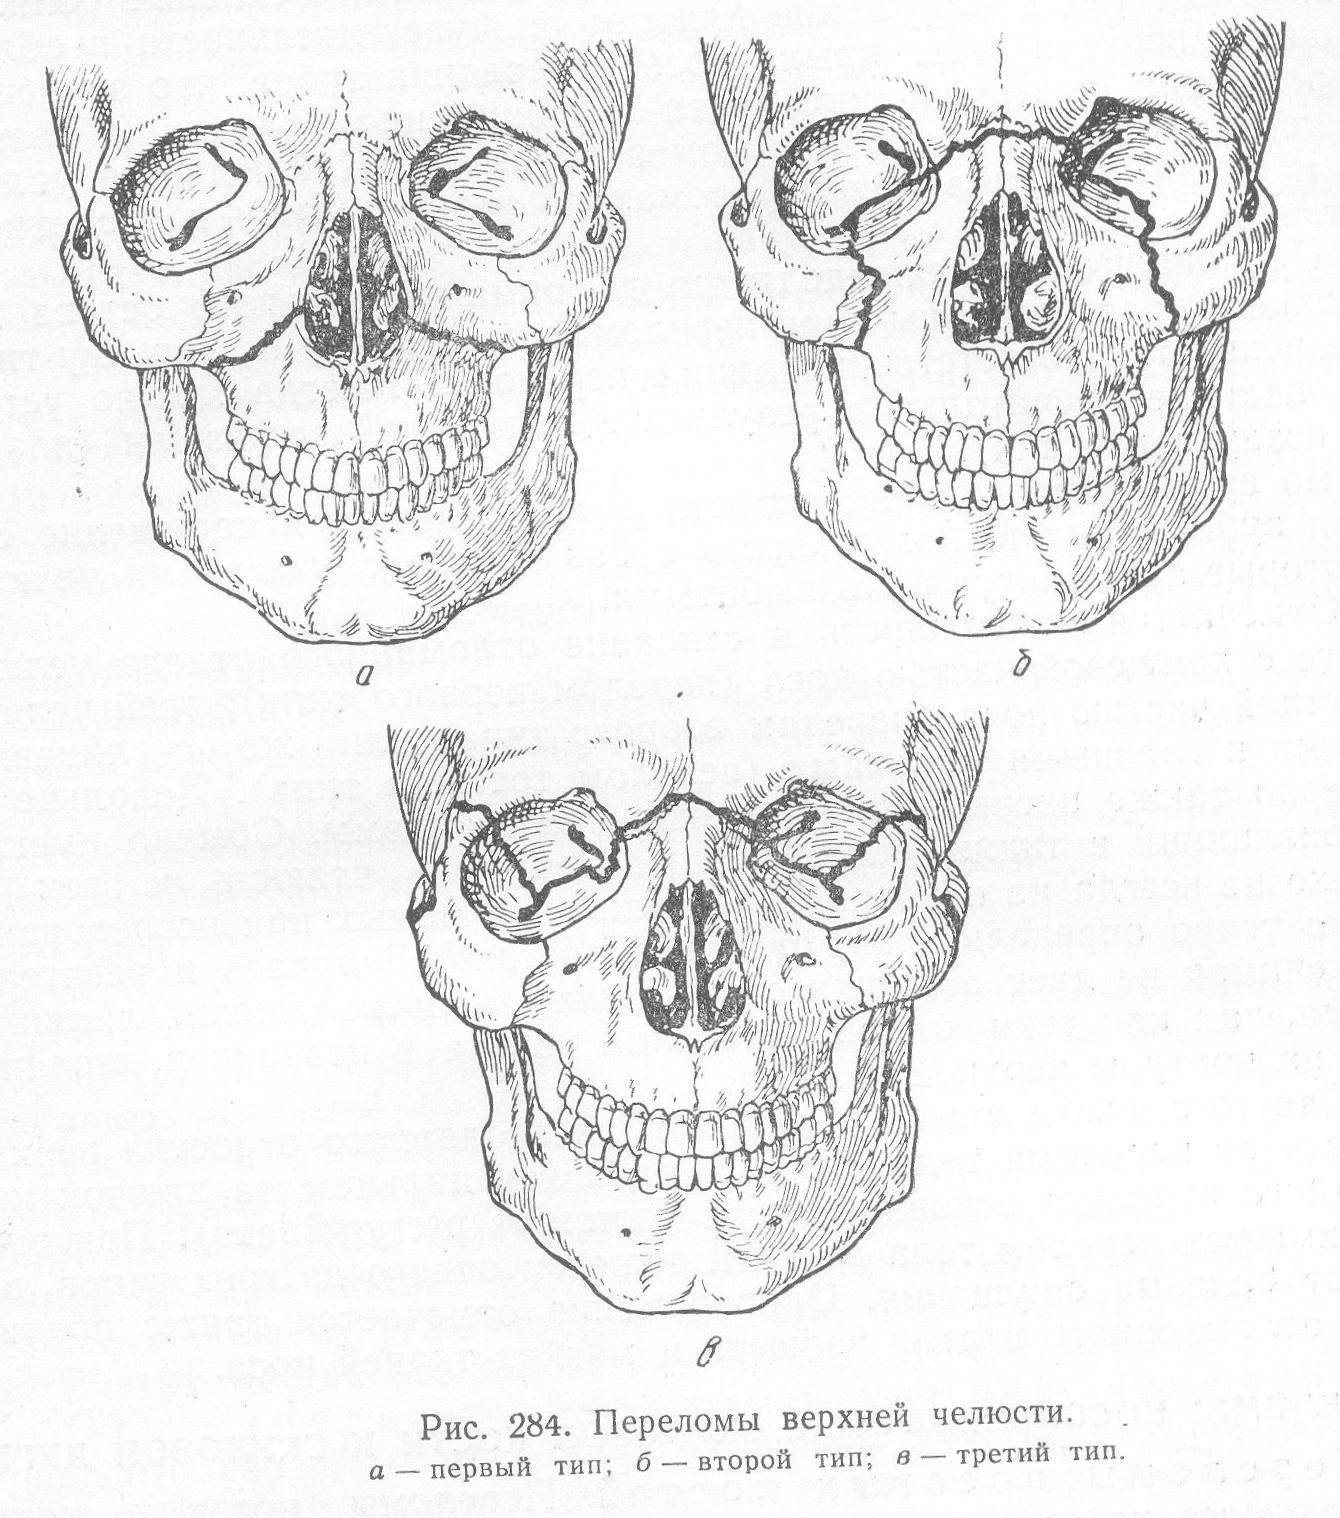 Перелом верхней челюсти: классификация, симптомы, лечение